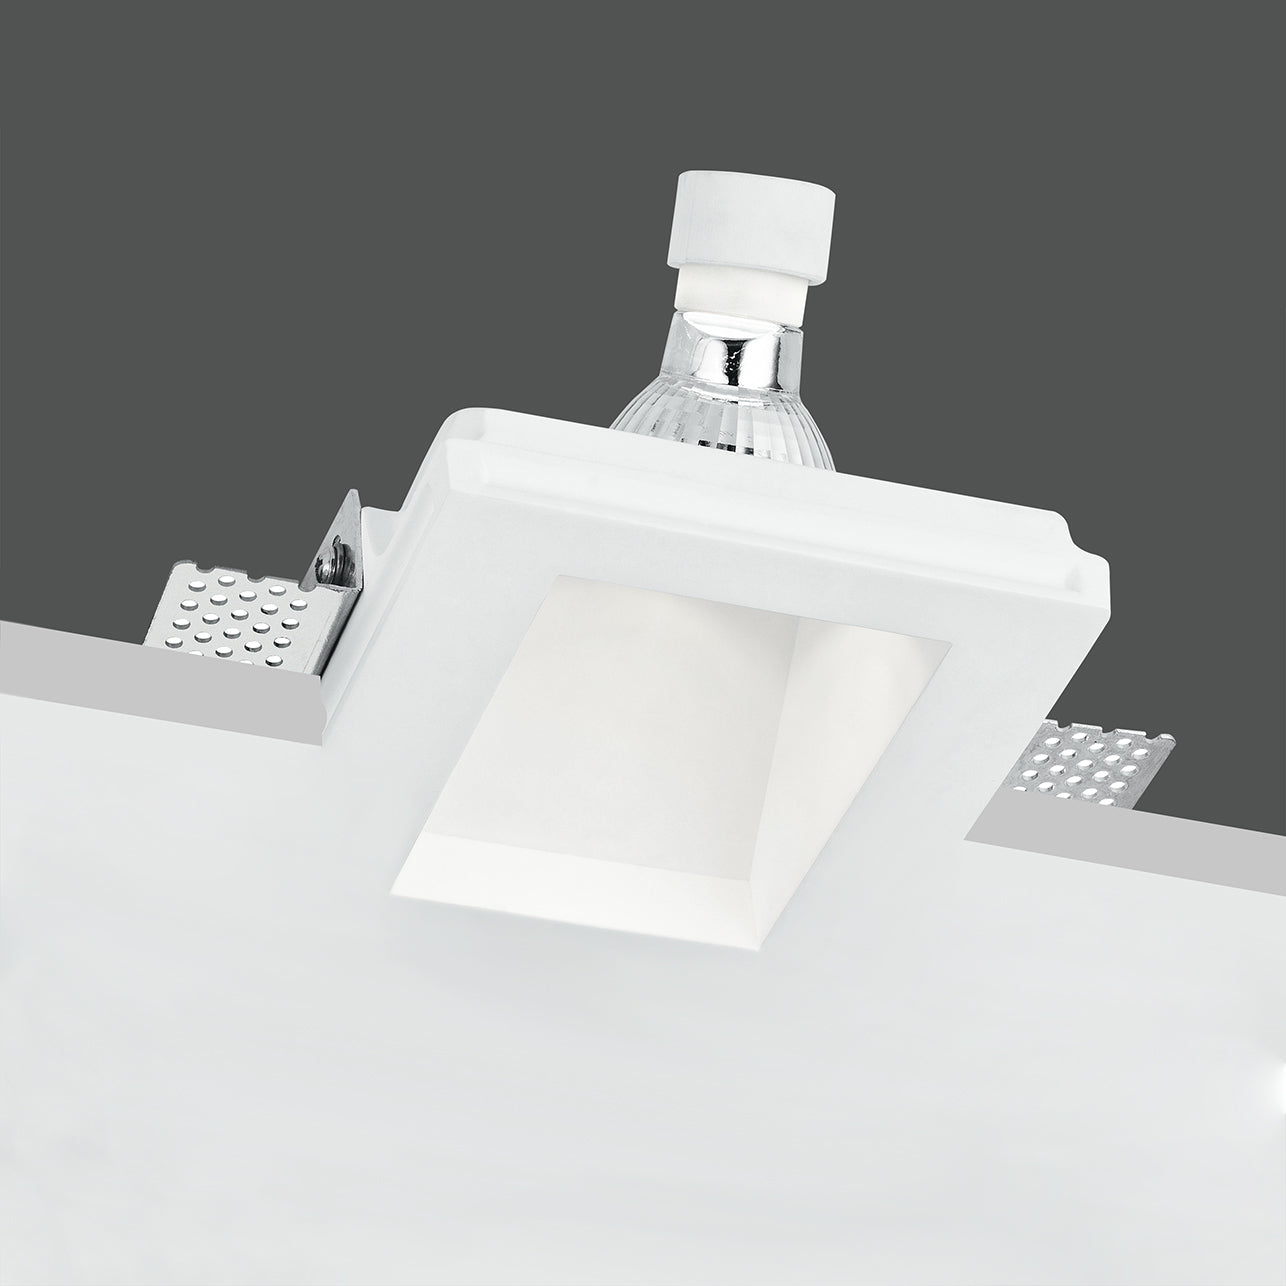 Foco empotrable GHOST de yeso blanco pintable con salida de luz asimétrica